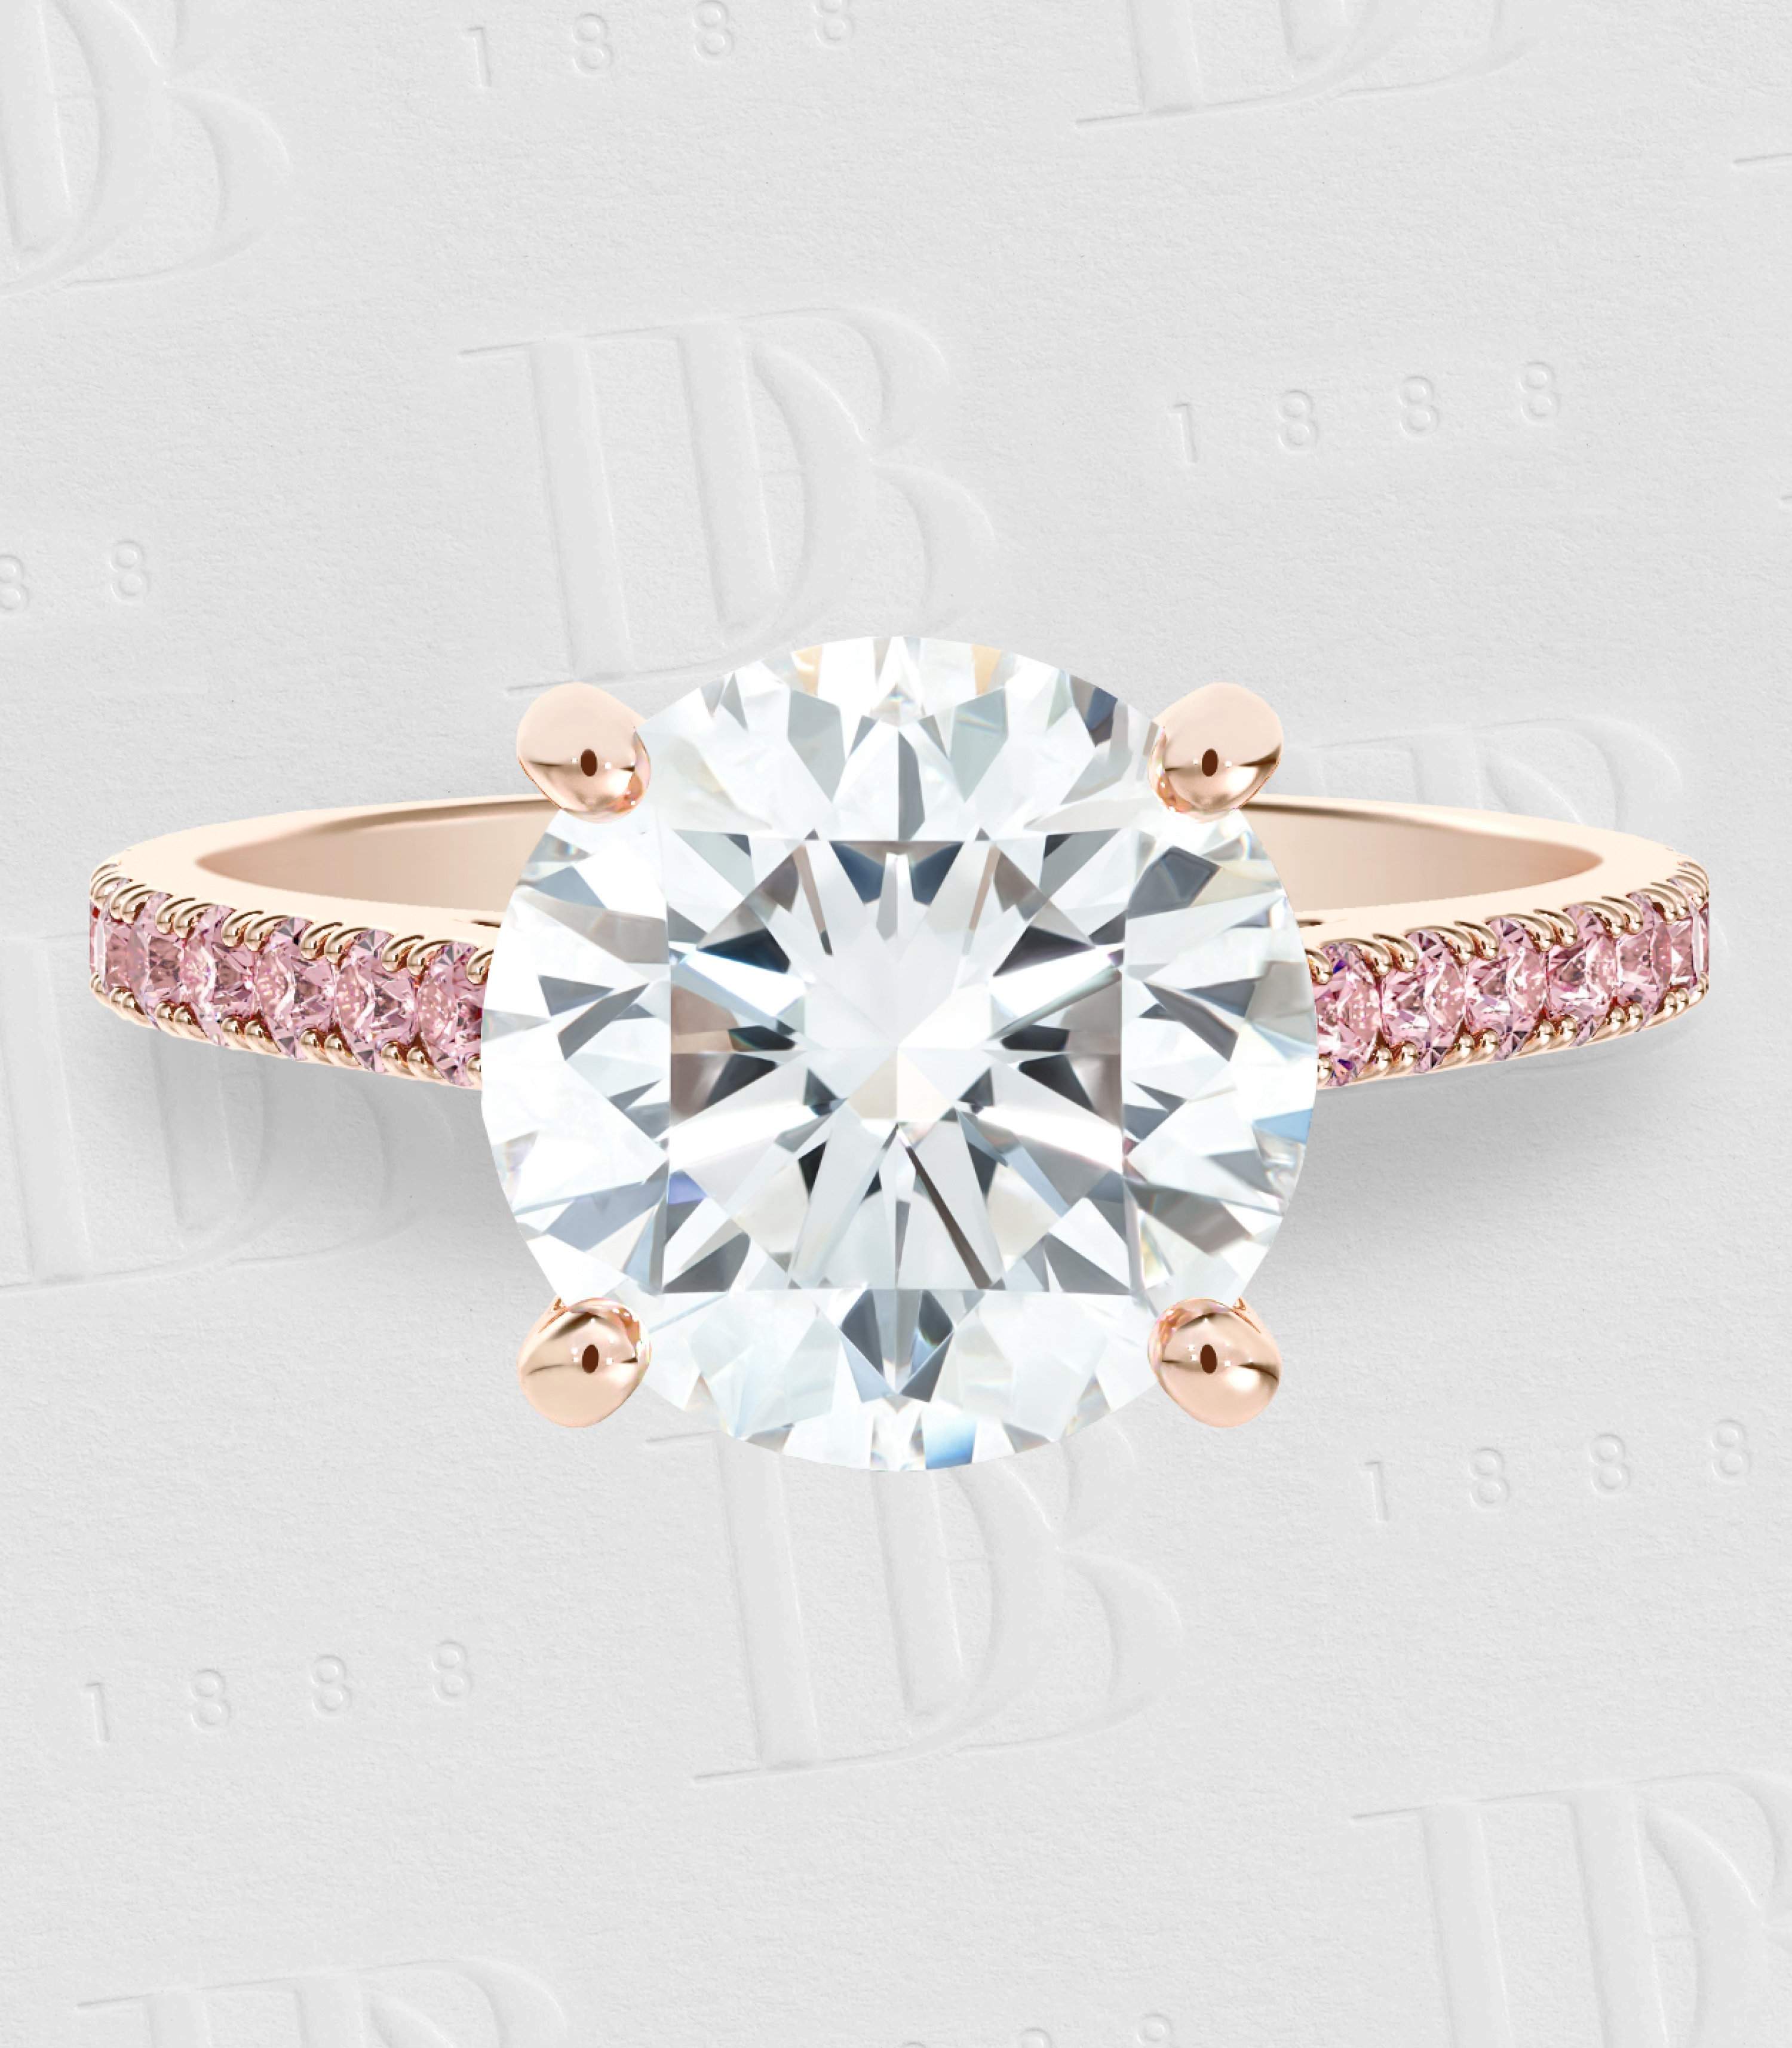 Solitaire DB Classic taille brillant anneau en or rose pavé diamants de couleur, image 2